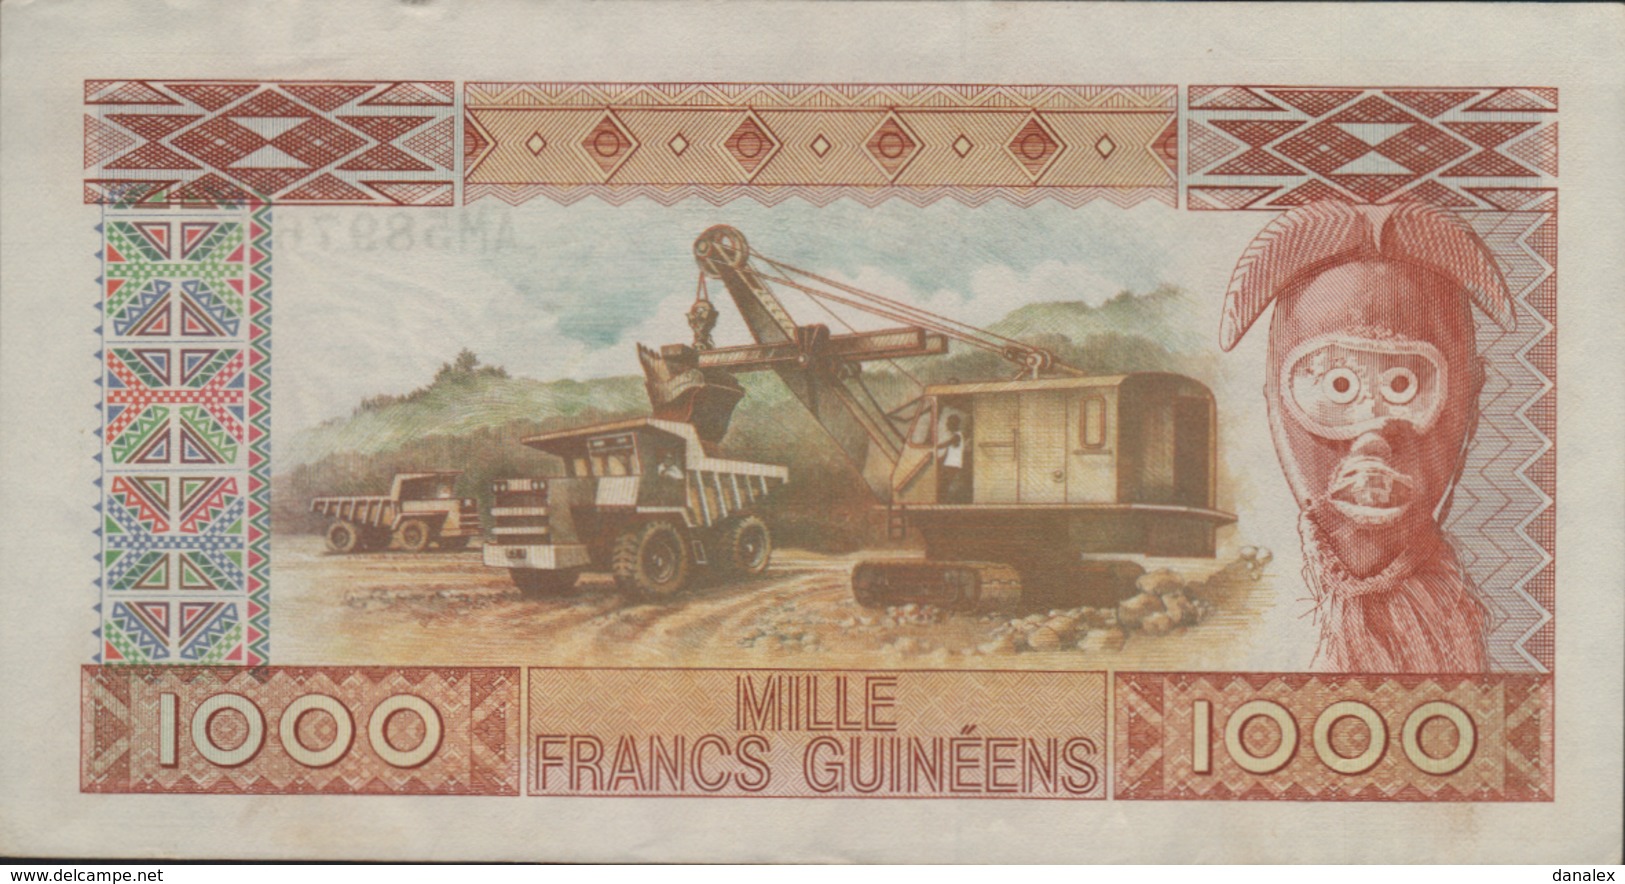 GUINEE 1000 FRANCS GUINEENS De 1985  PICK 32a  XF/SUP+ - Guinée